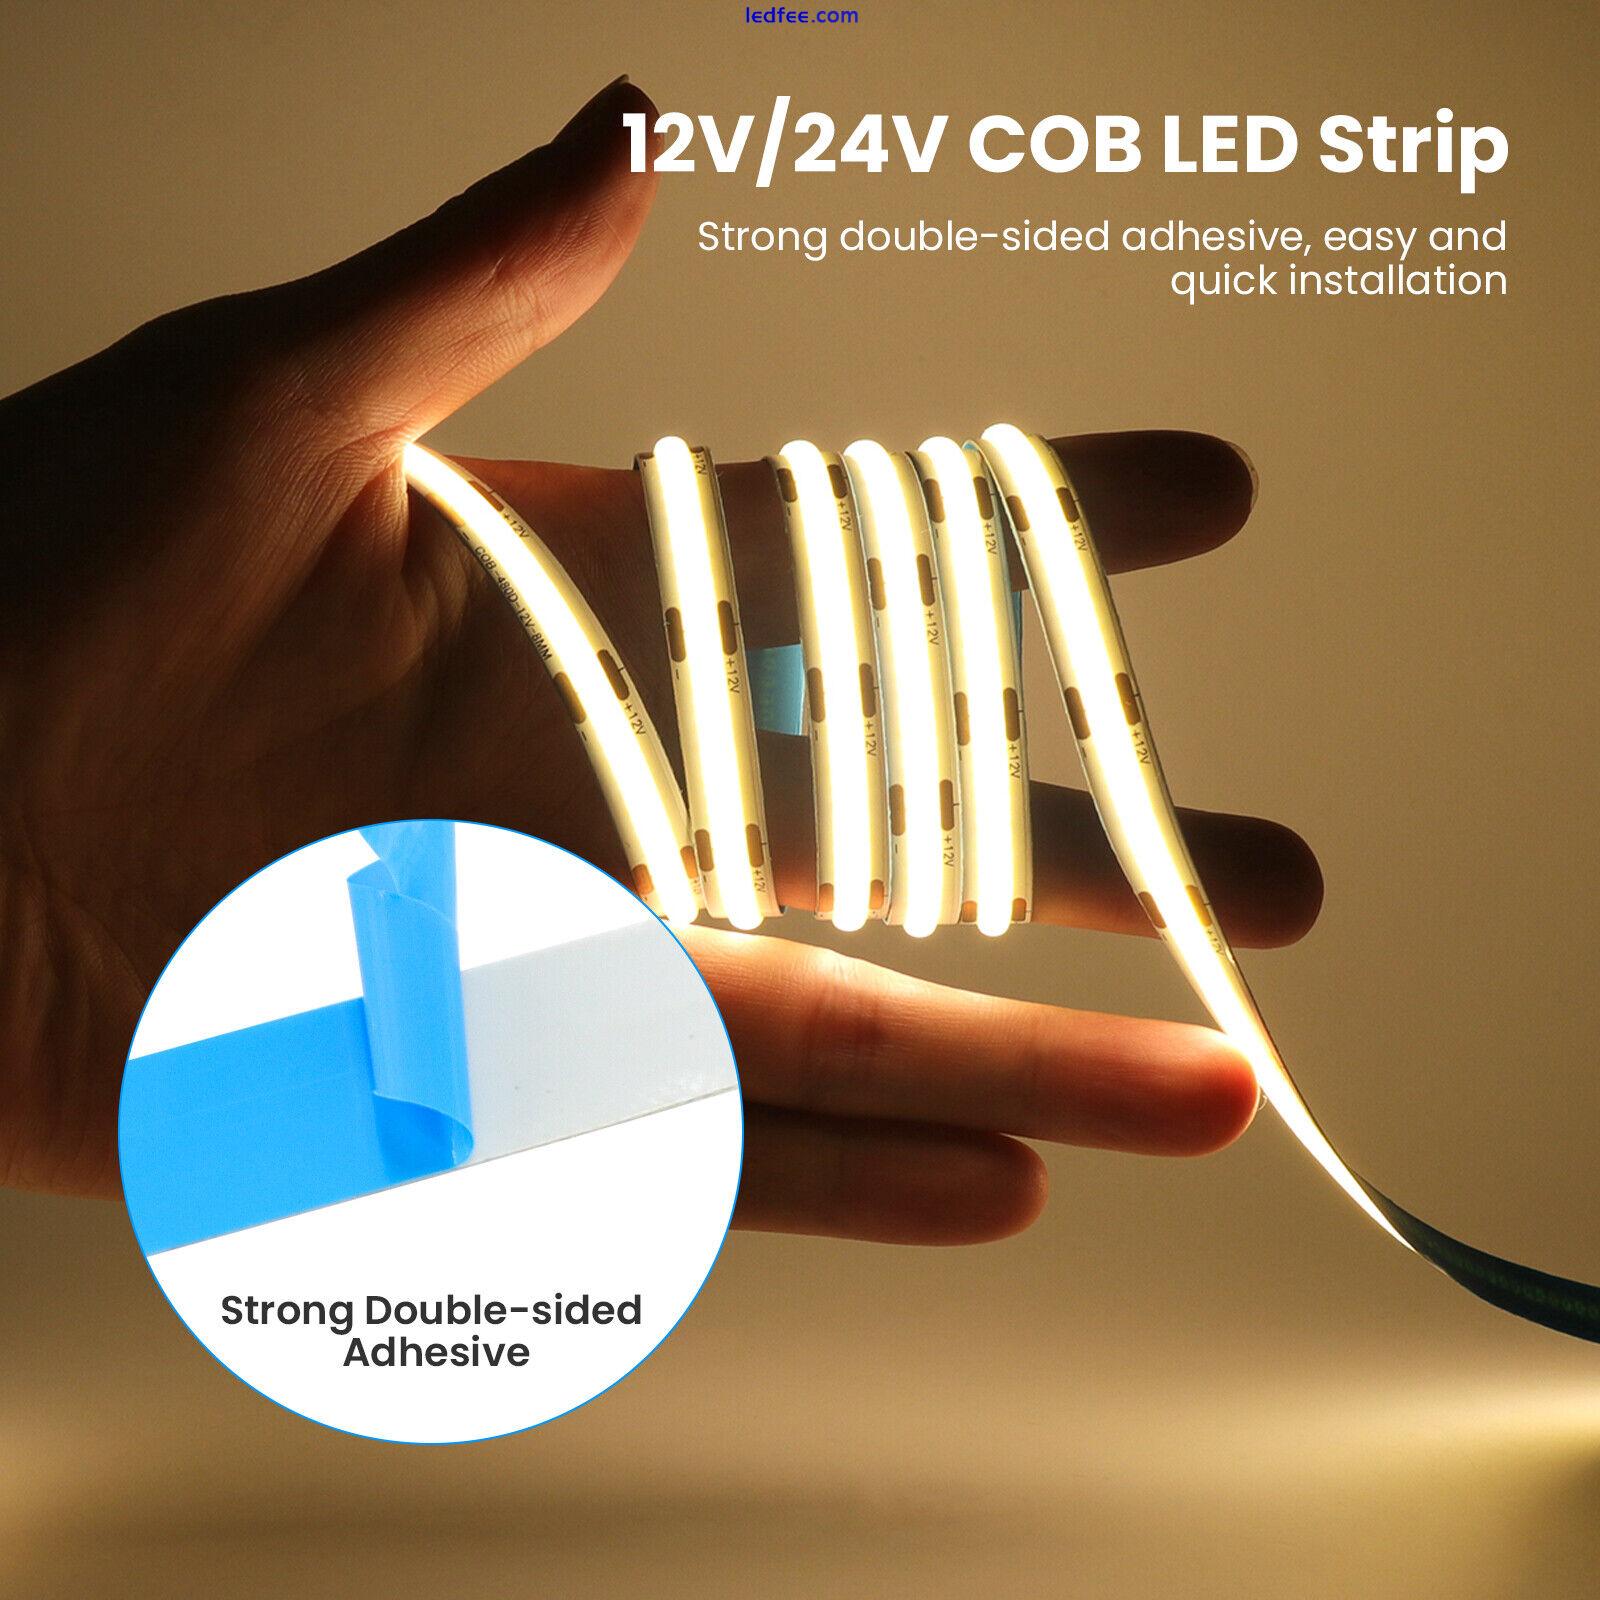 24V High Density COB LED Strip Lights Flexible Tape Rope Cabinet Kitchen Light 3 